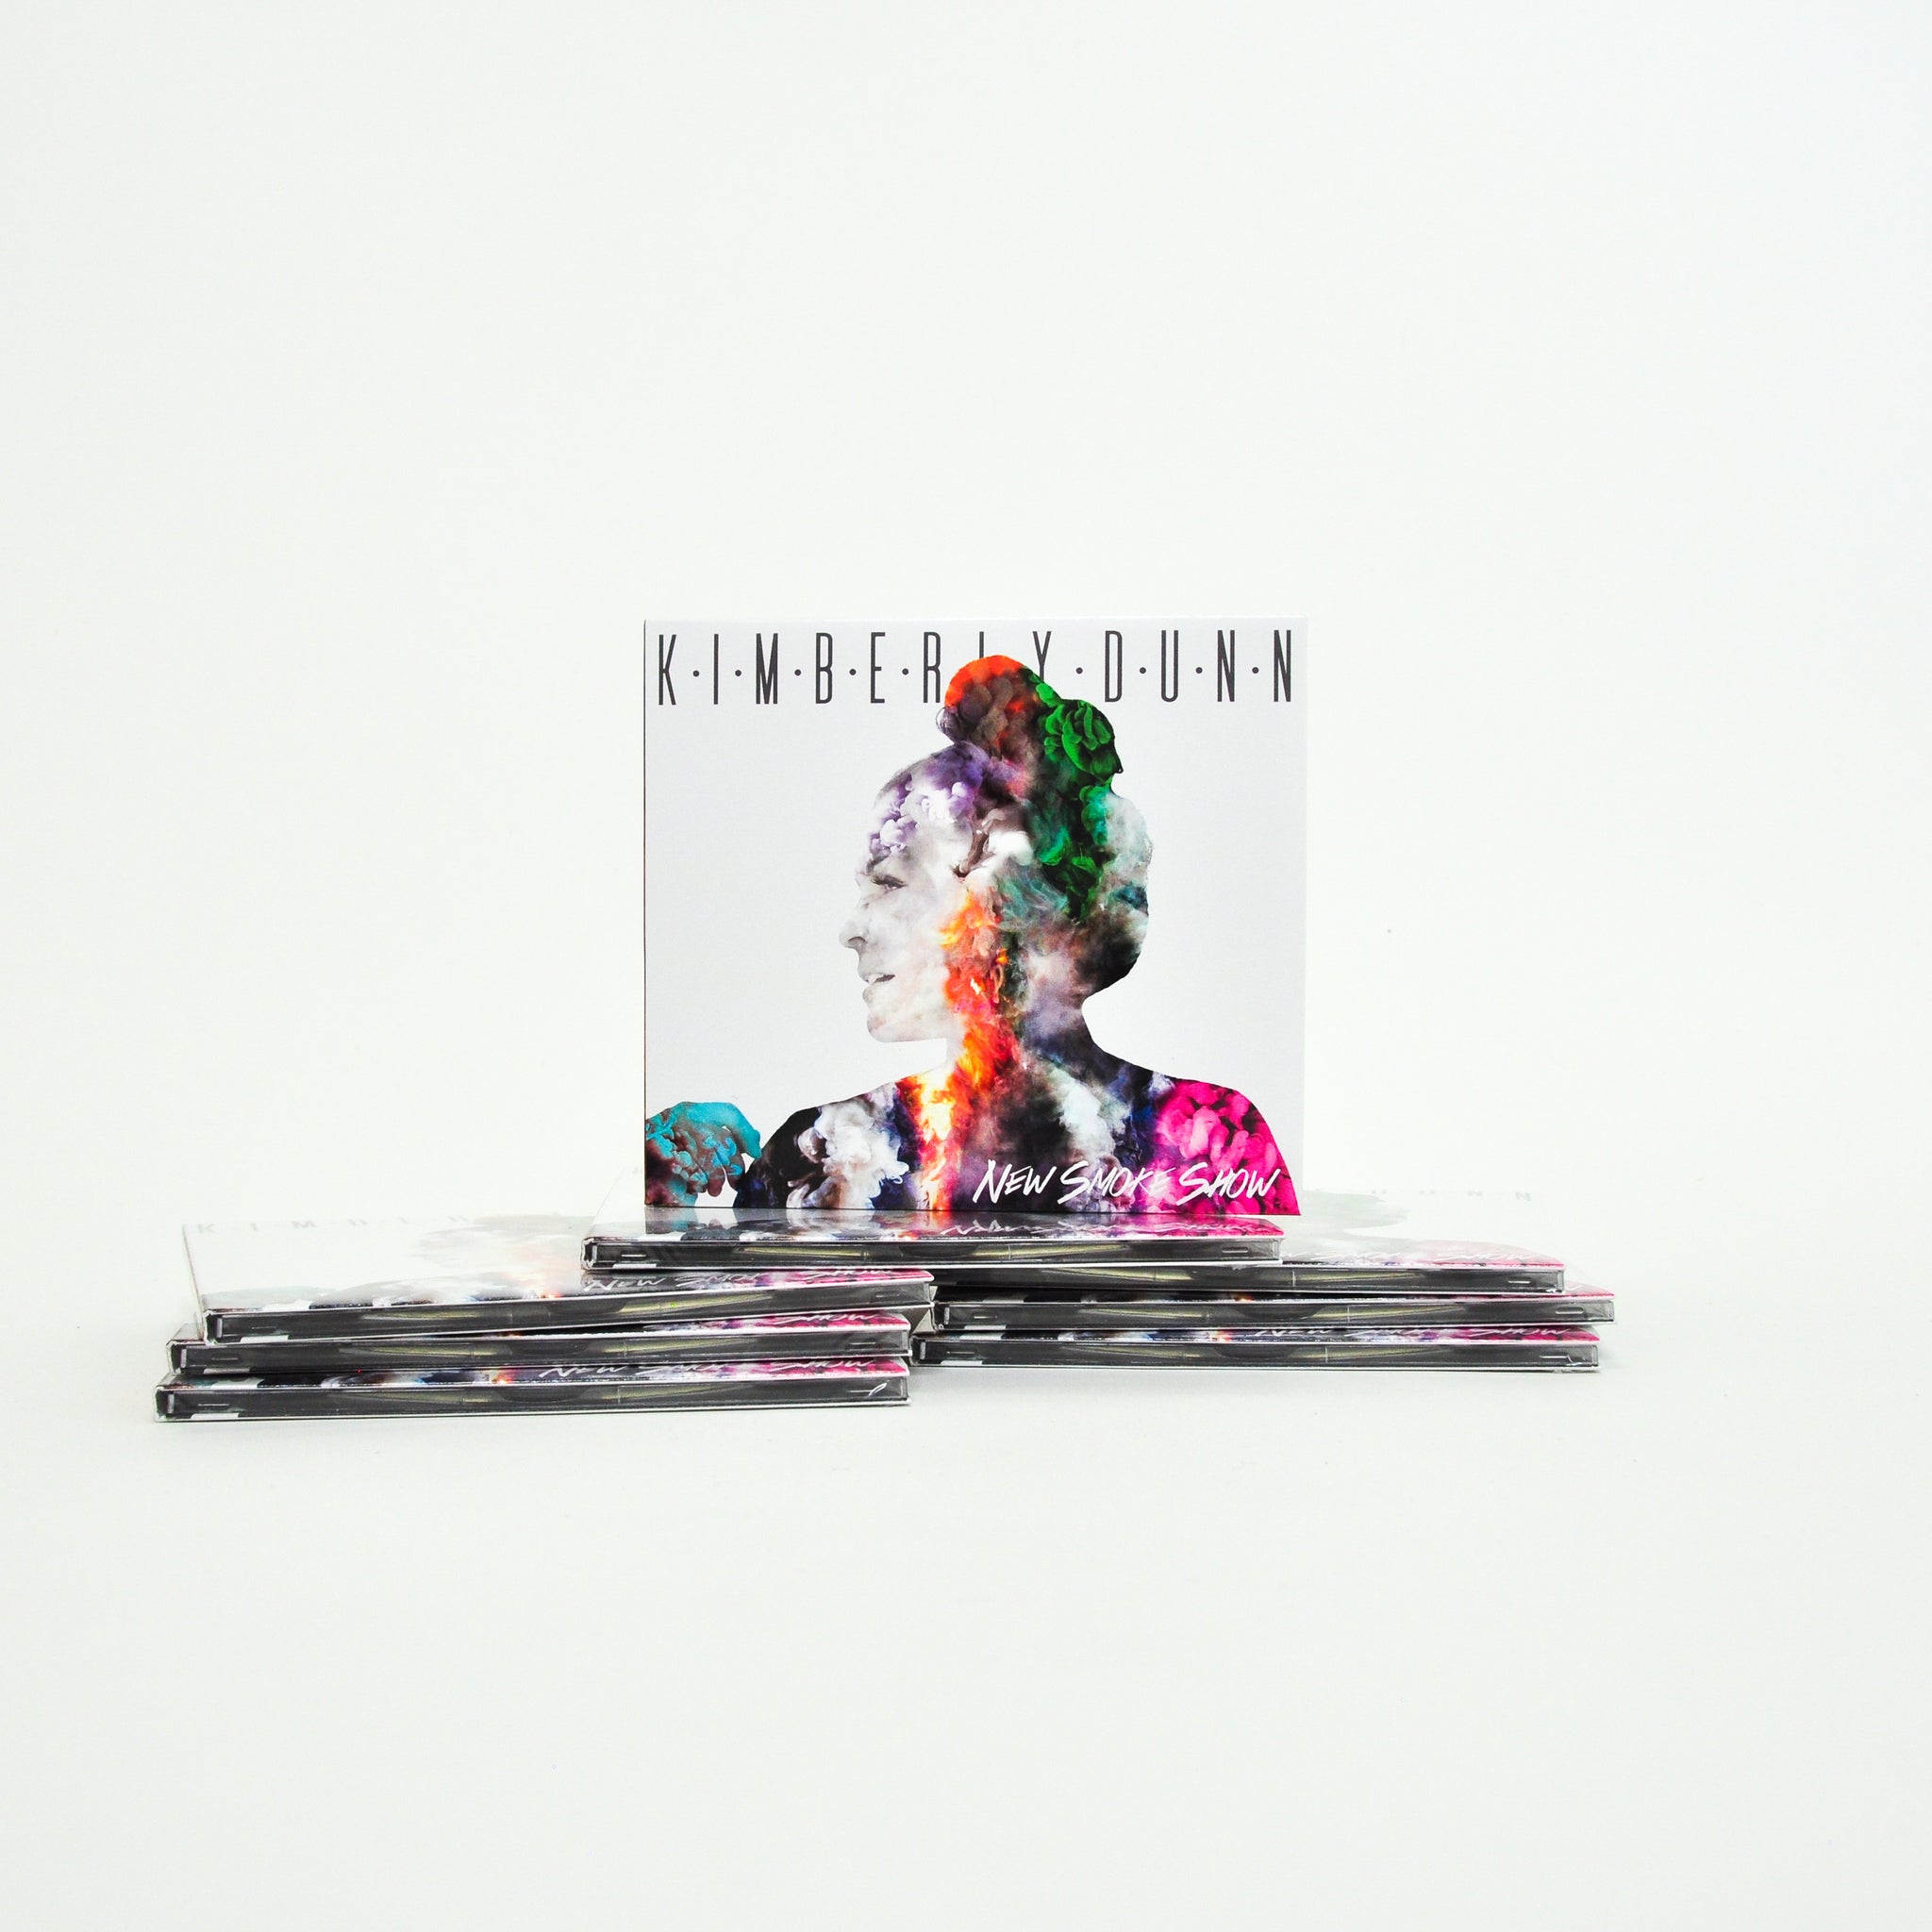 Kimberly Dunn New Smoke Show CD